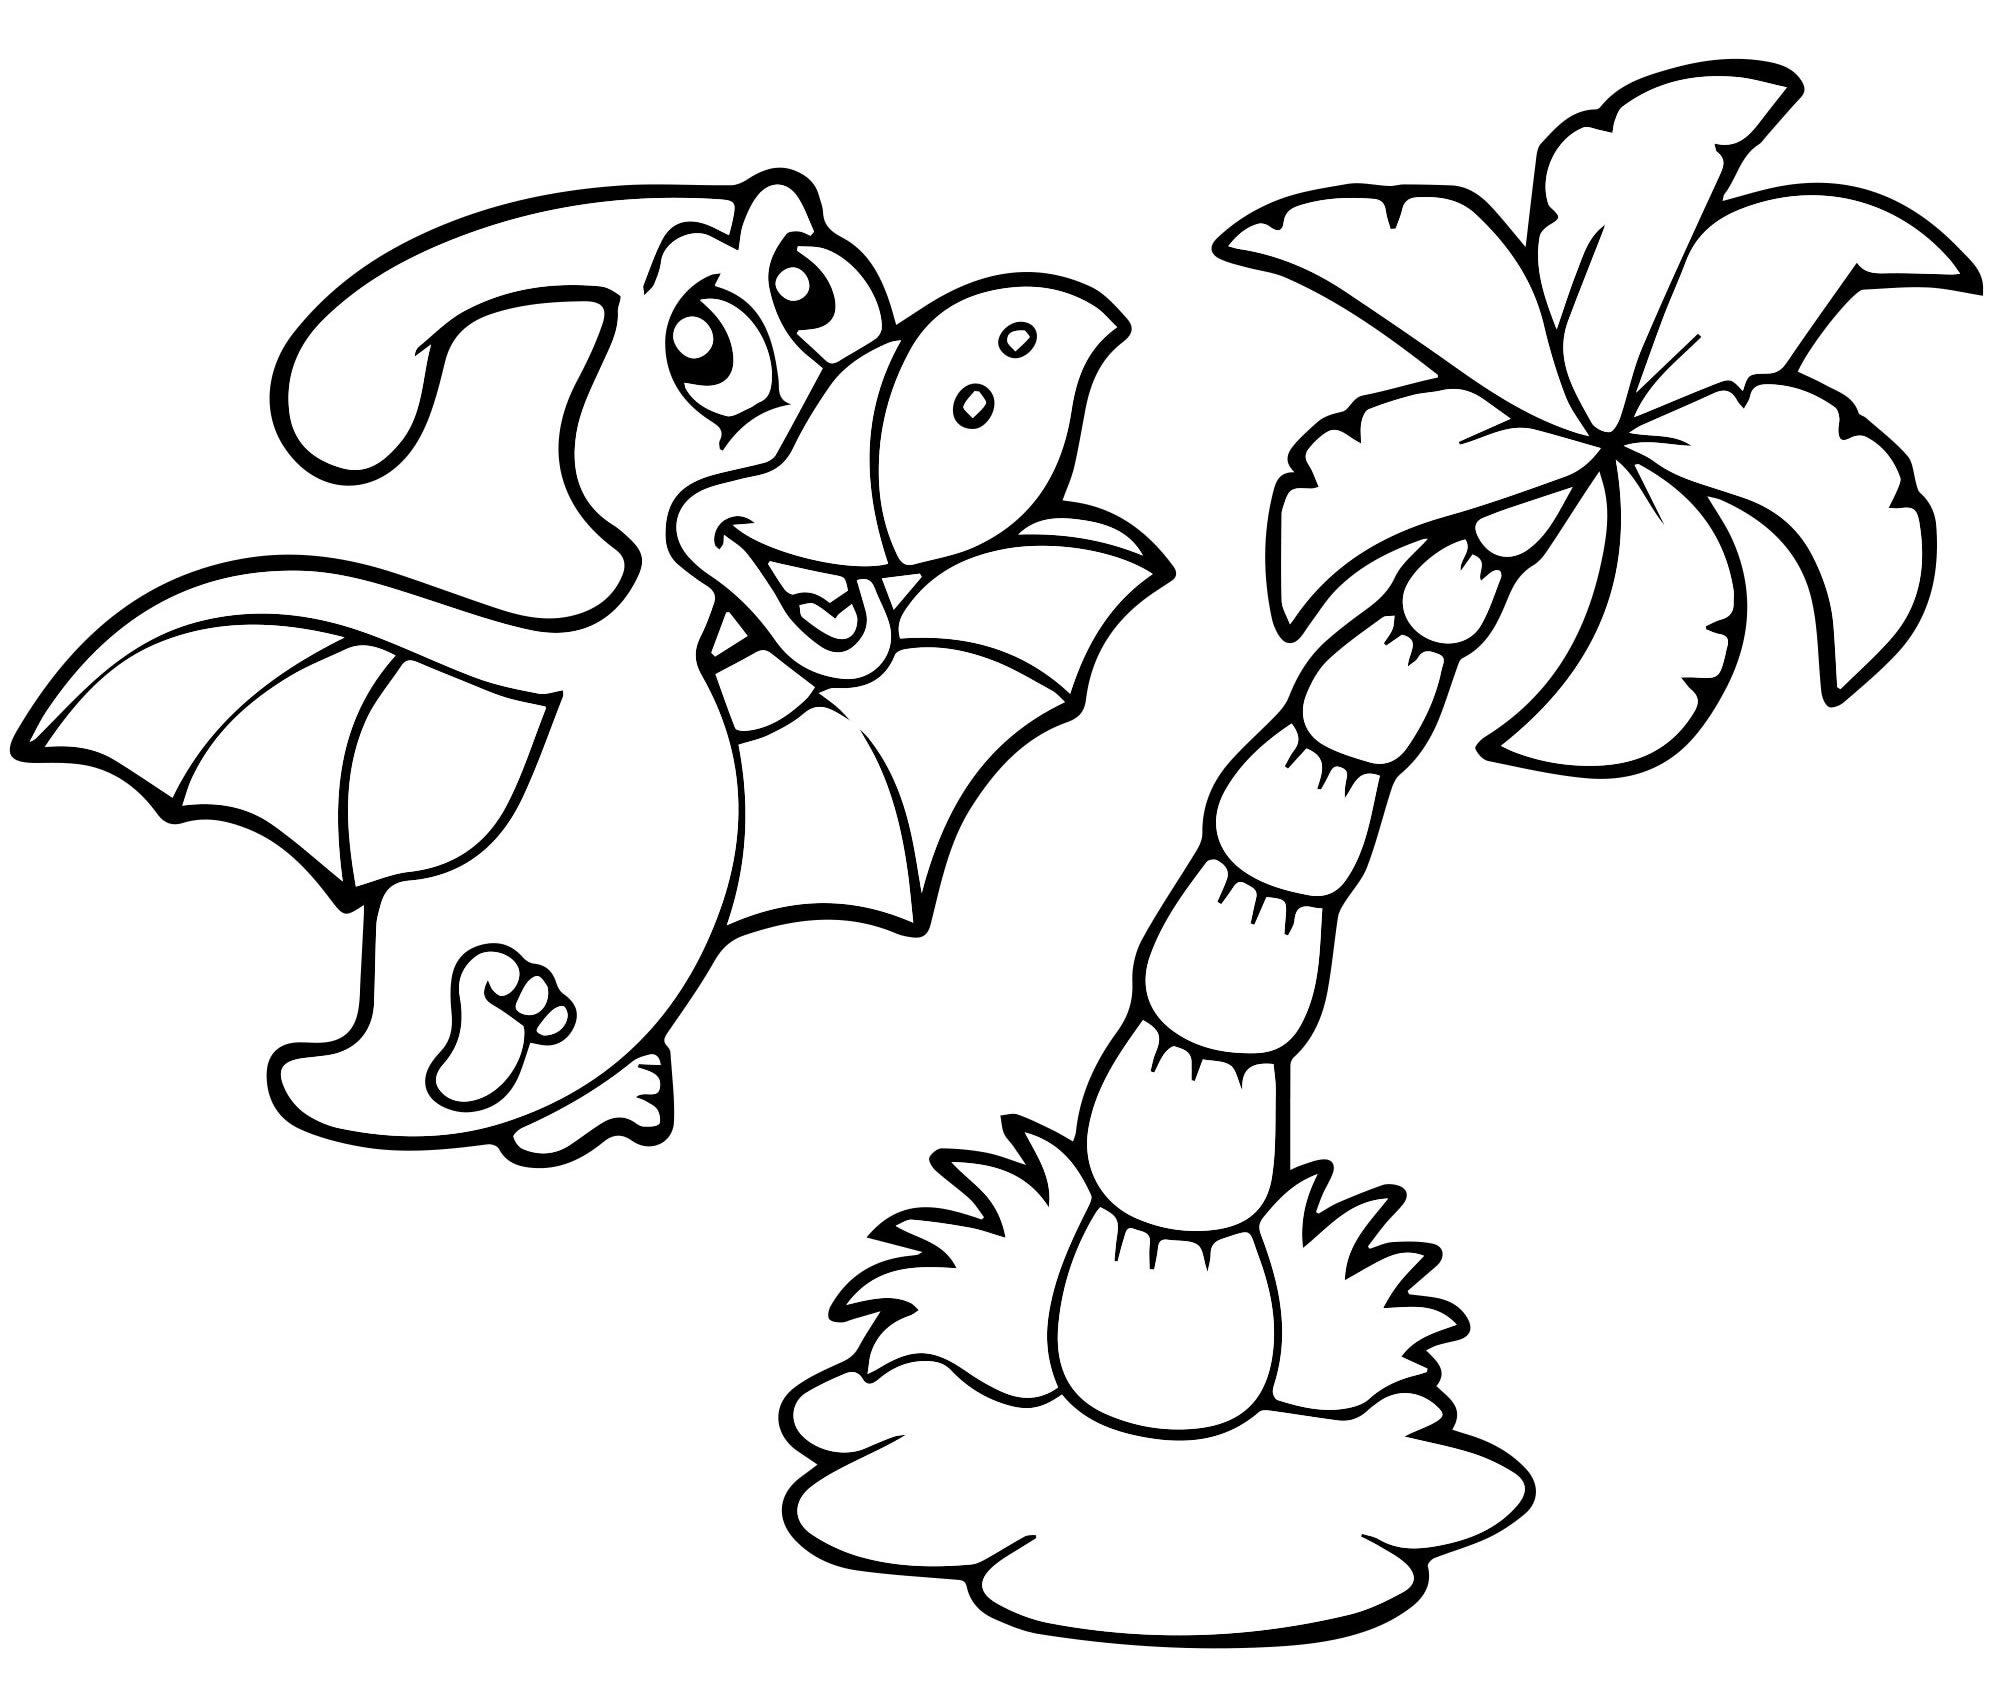 Динозавр и пальма — раскраска для детей. Распечатать бесплатно.